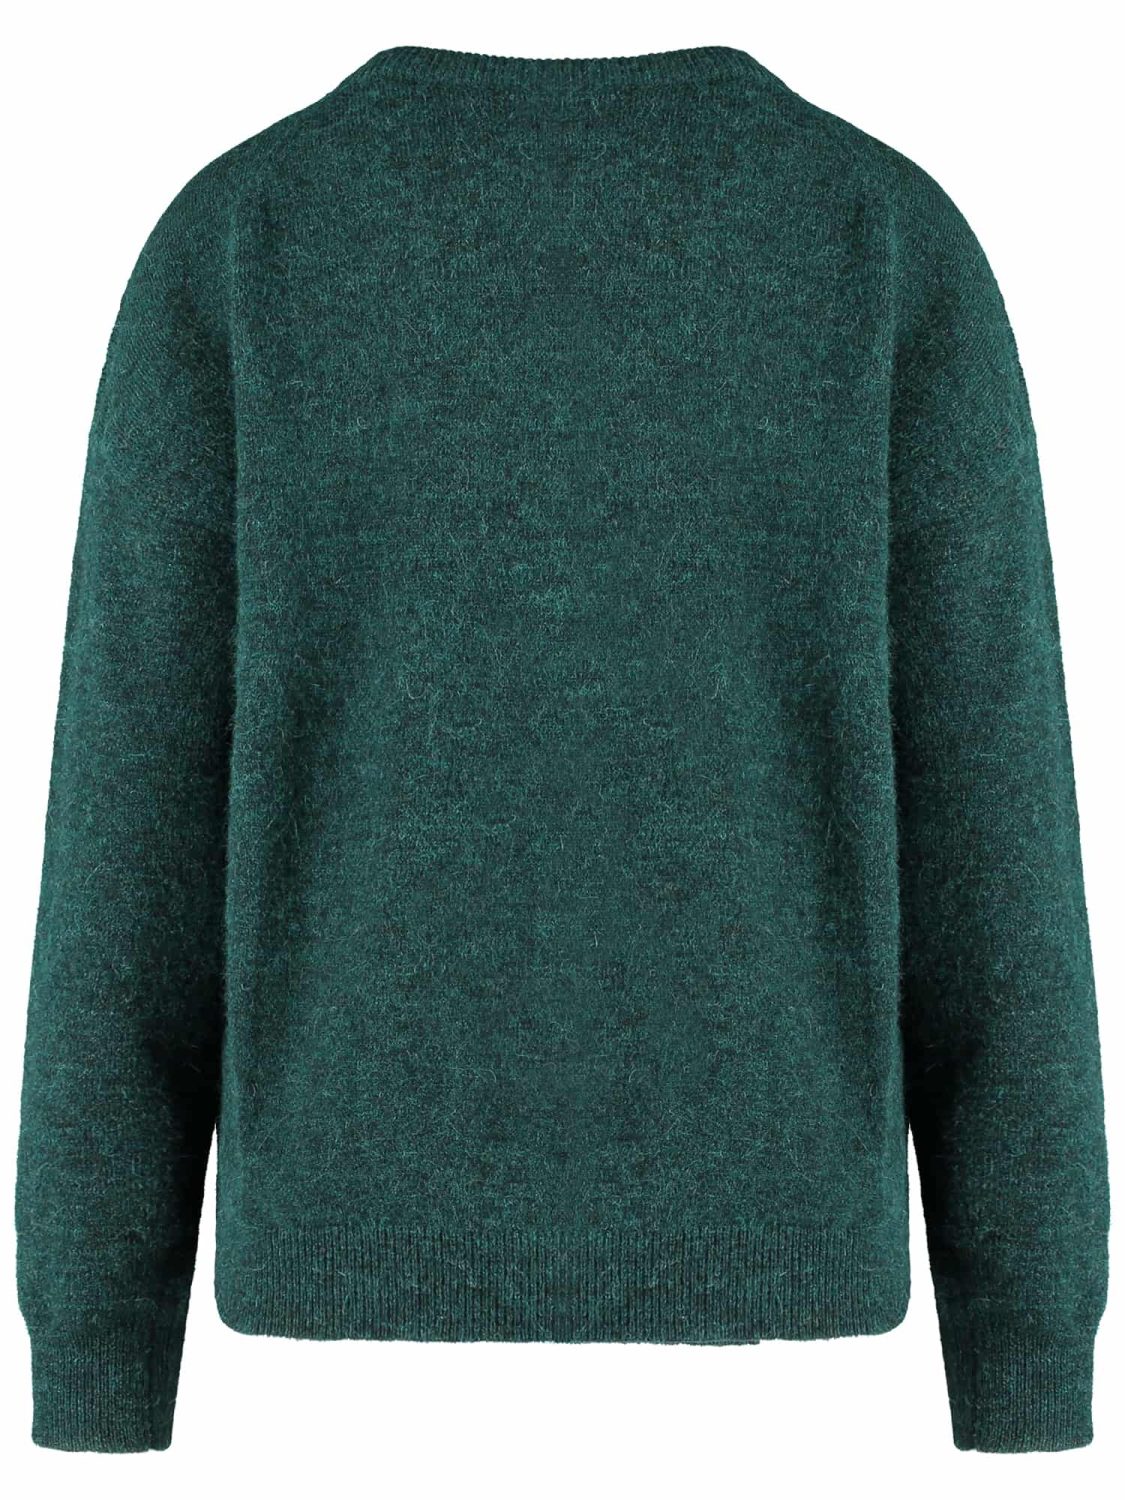 Green sweater b